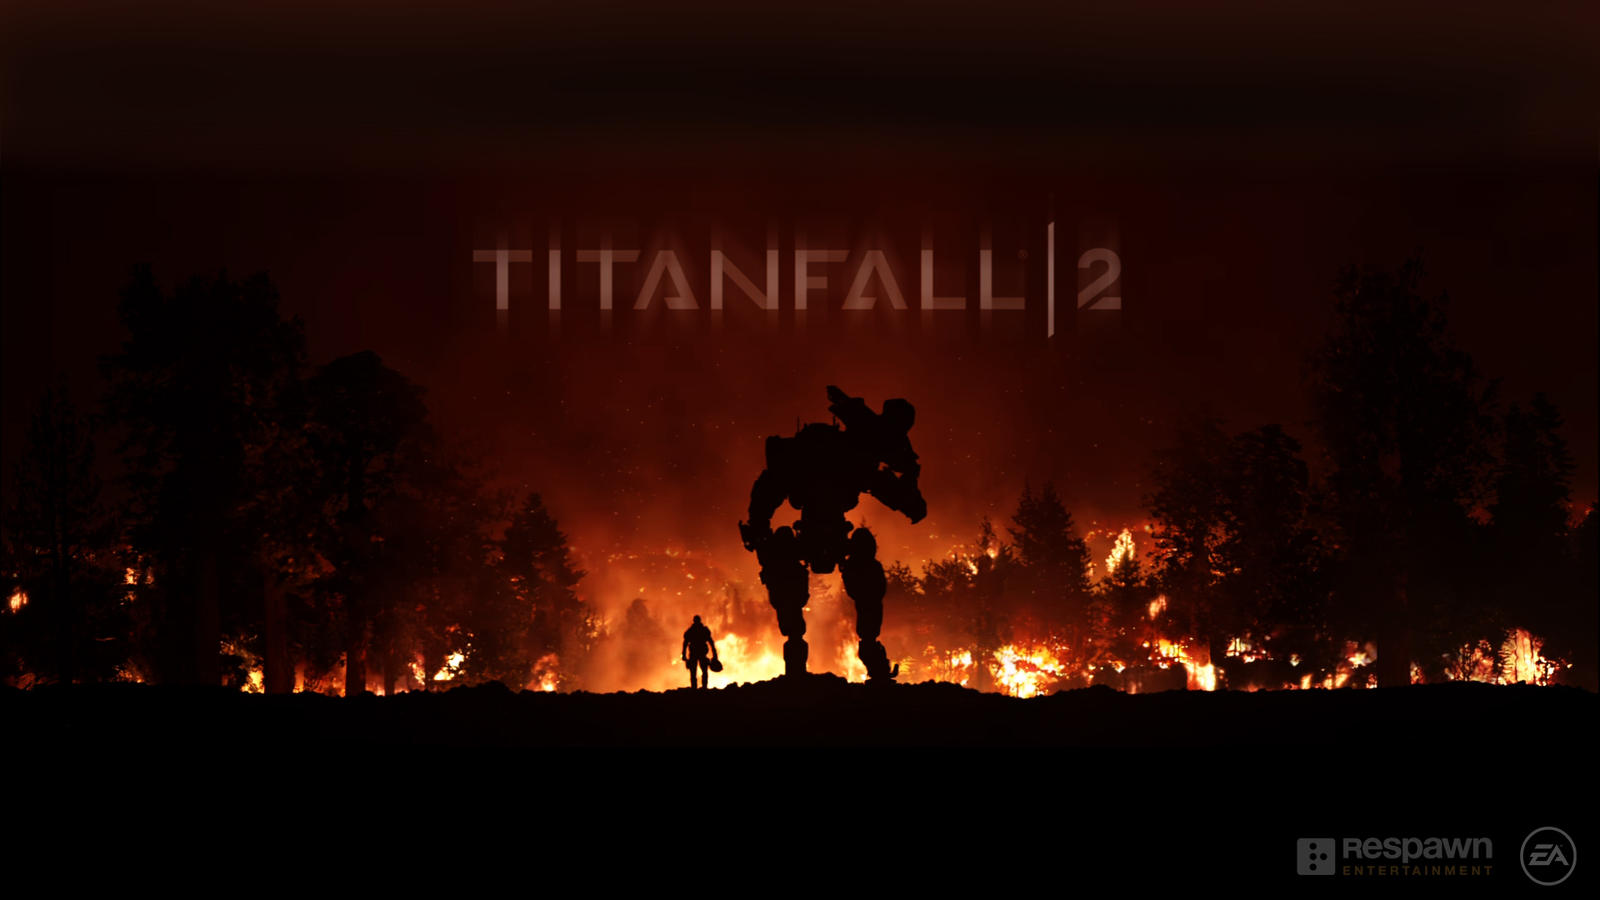 Titanfall 2 Fan-Art Wallpaper 1080p by